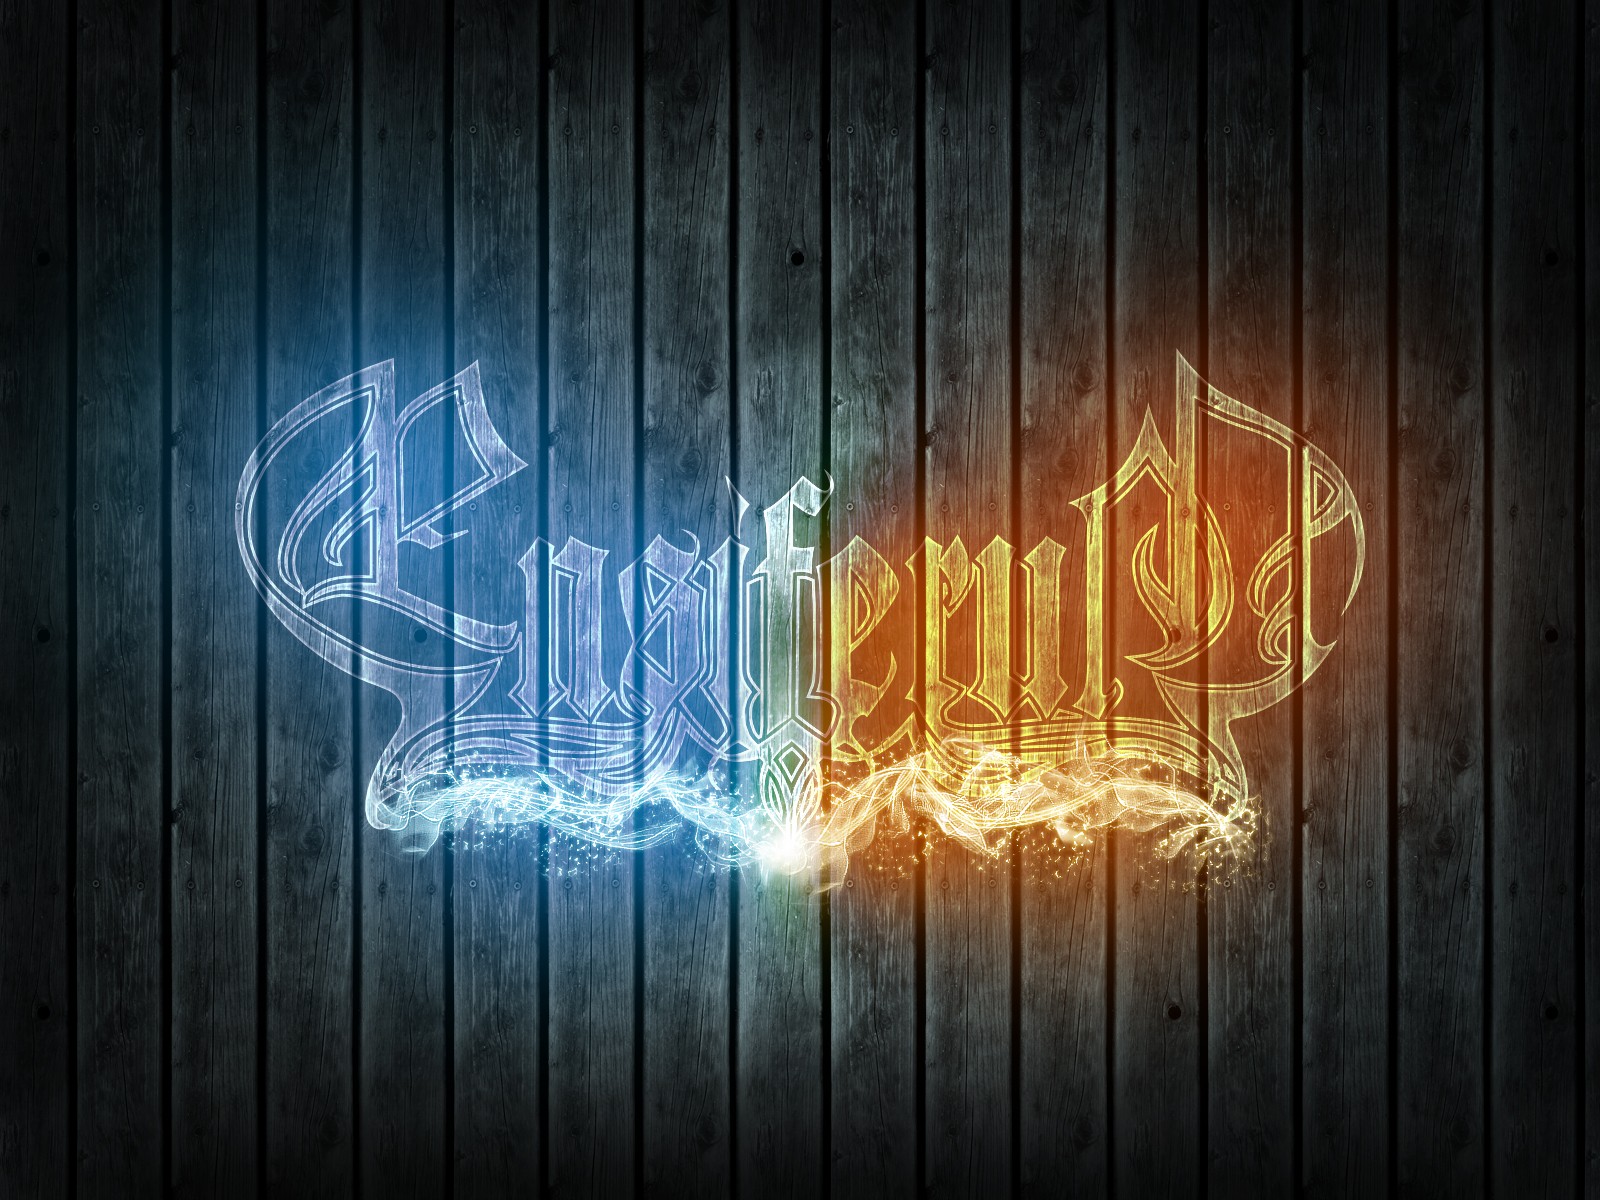 Ensiferum, Band, Metal music, Artwork, Logo, Digital art Wallpaper